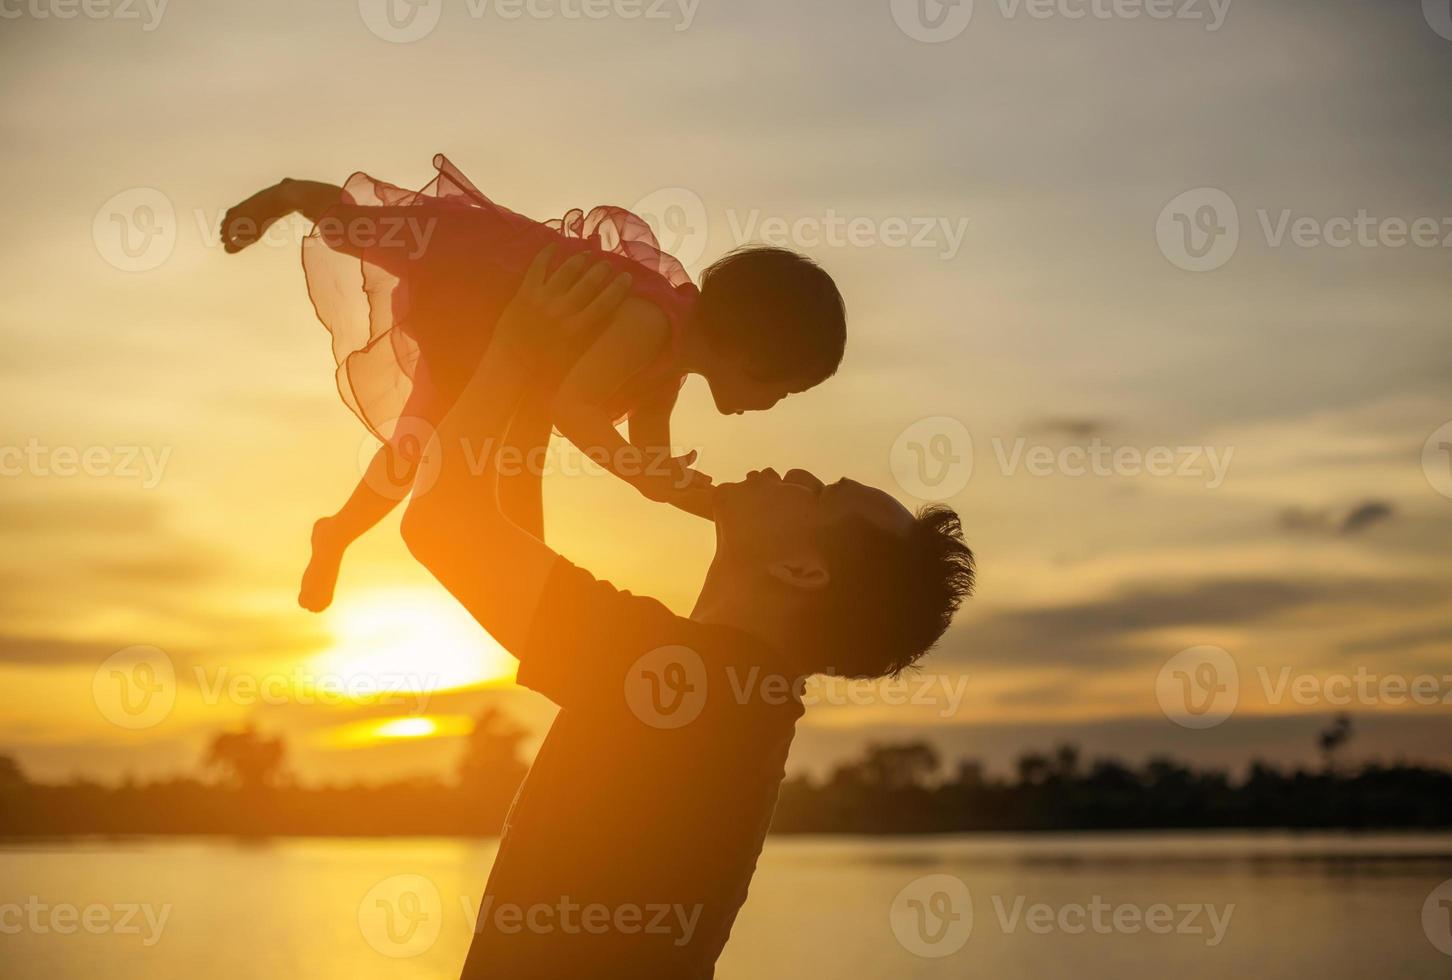 le père a emmené le bébé apprendre à marcher au coucher du soleil. photo